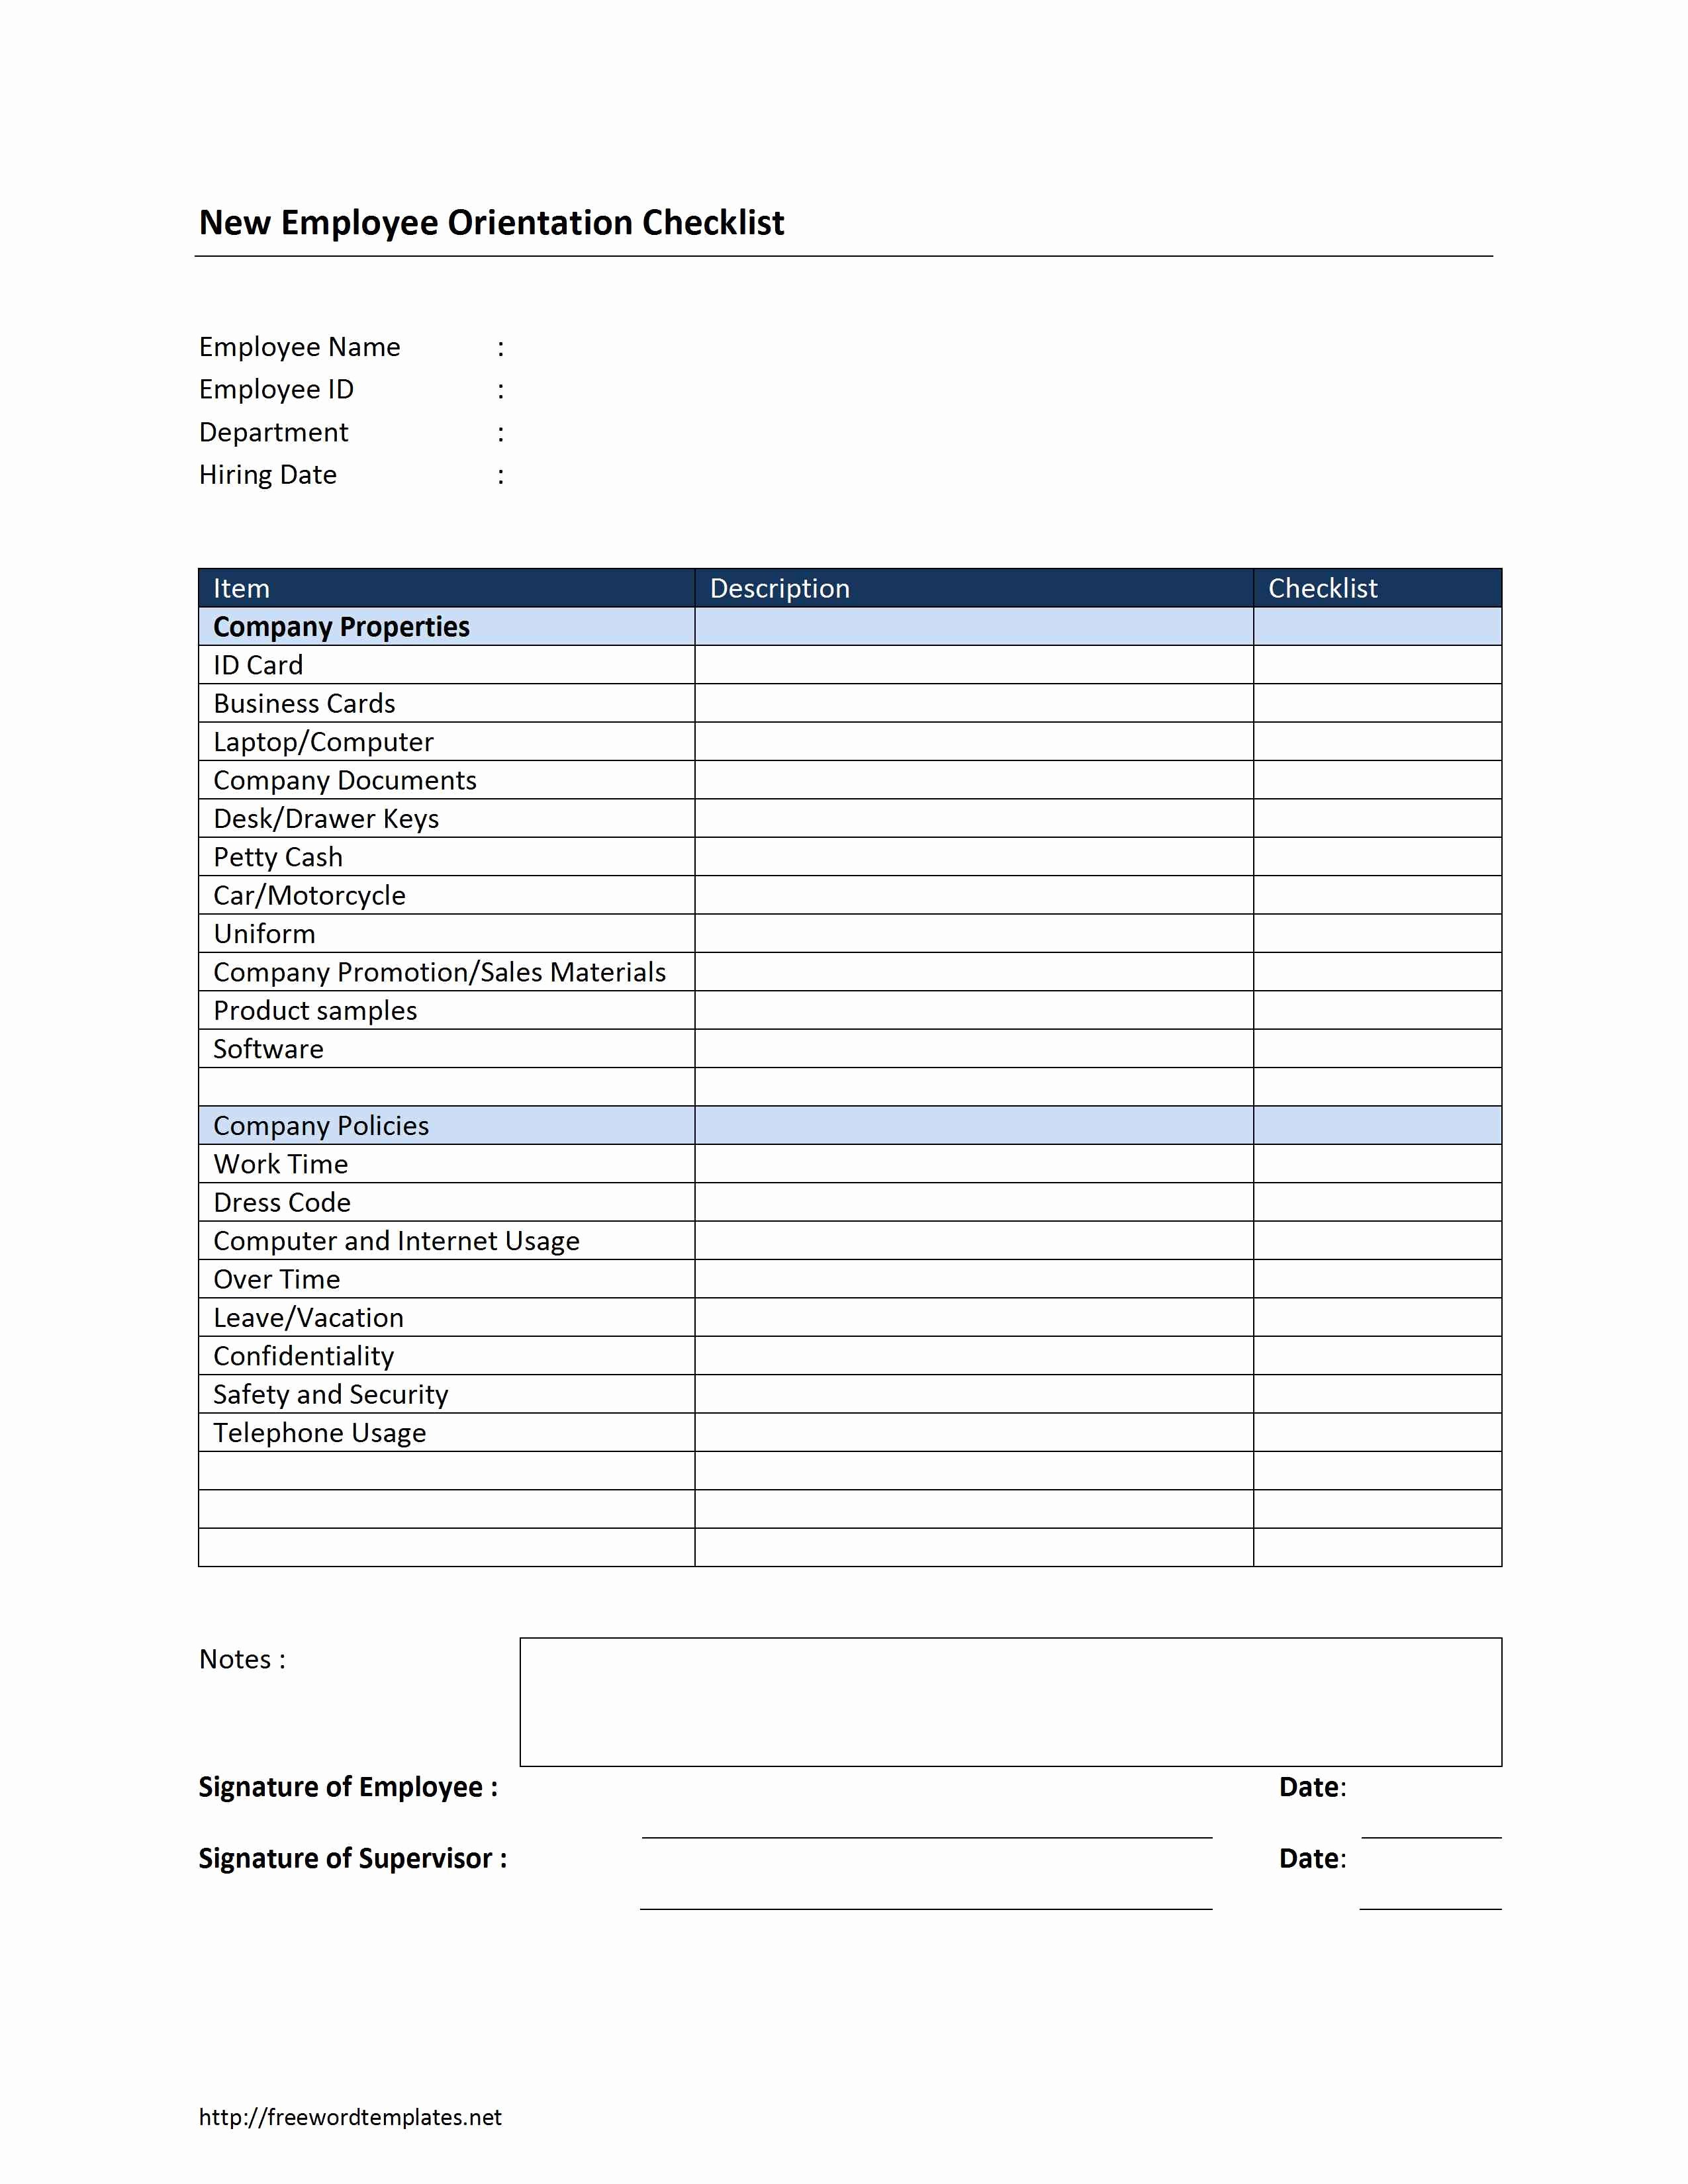 New Employee orientation Checklist Template Fresh New Employee orientation Checklist Template